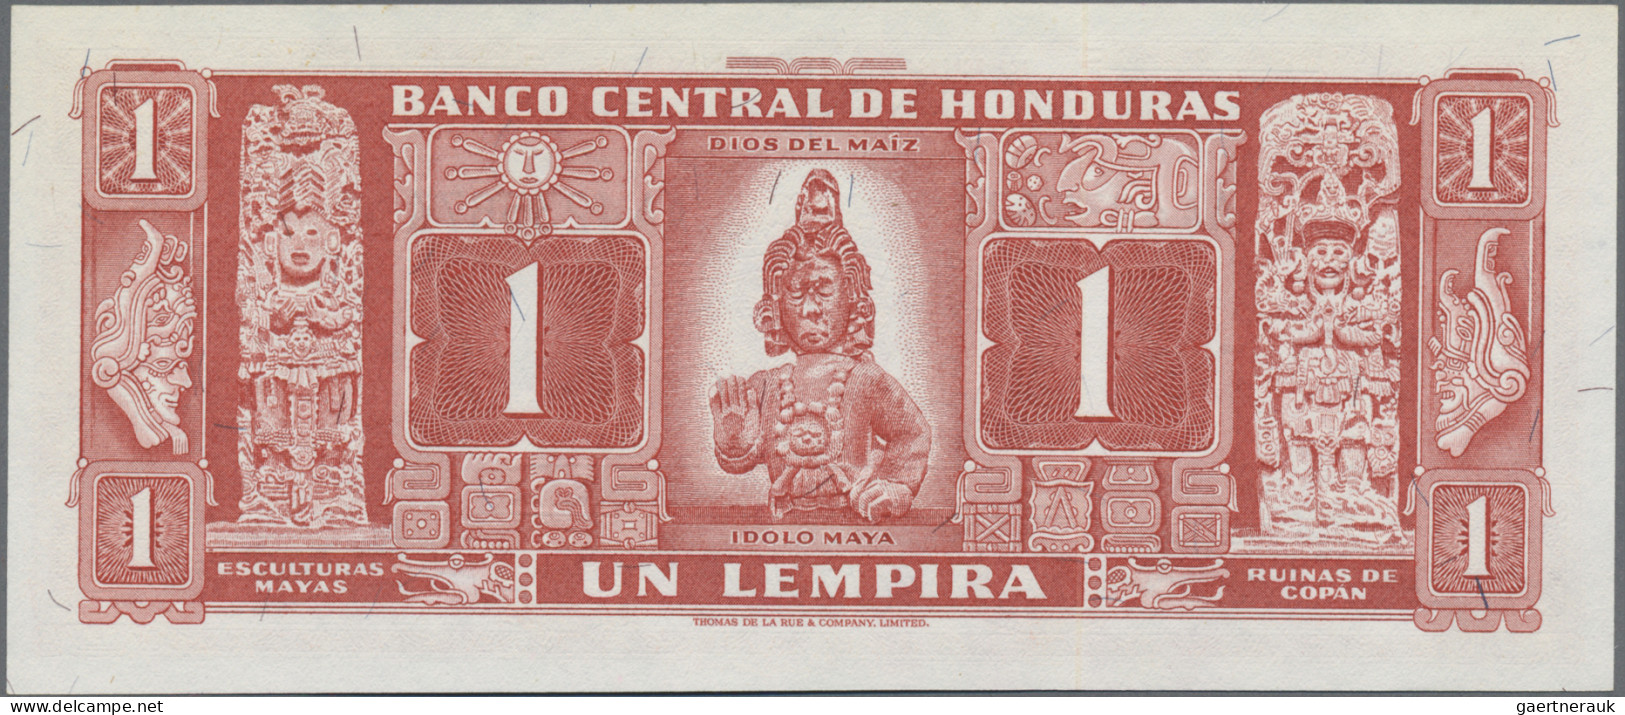 Honduras: El Banco Central De Honduras, 1 Lempira 30th July 1965, P.54Ab In UNC - Honduras